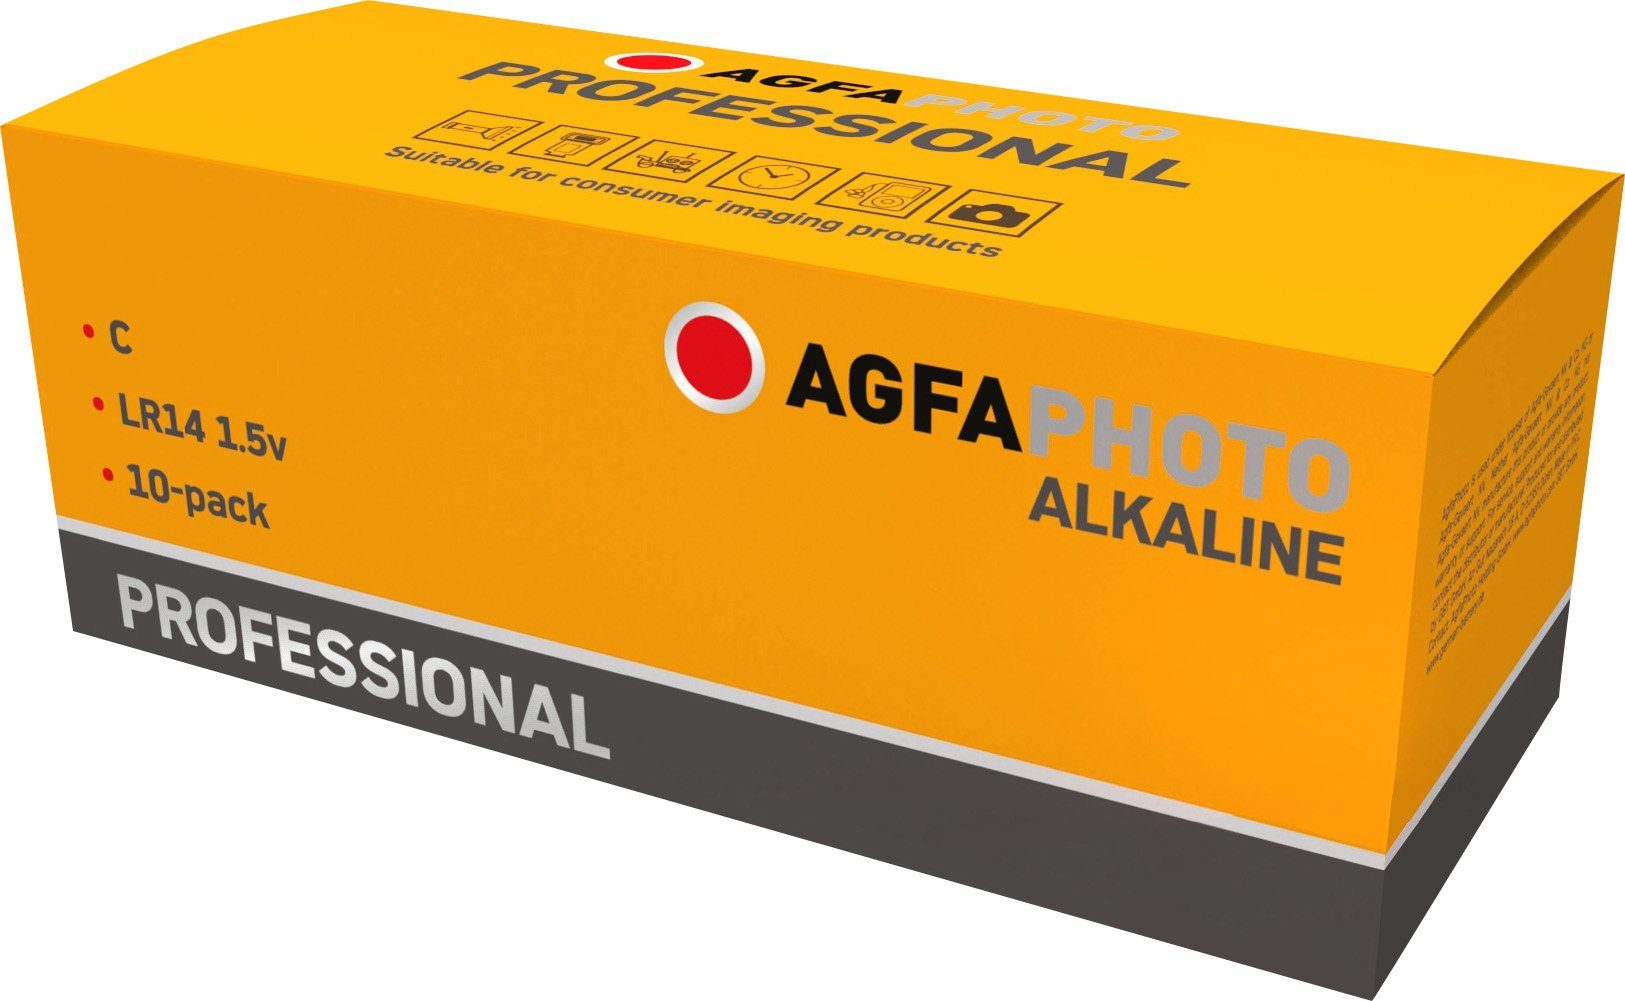 Retail Alkaline, Baby, Agfaphoto 1.5V Batterie C, Professional, AgfaPhoto Batterie LR14,